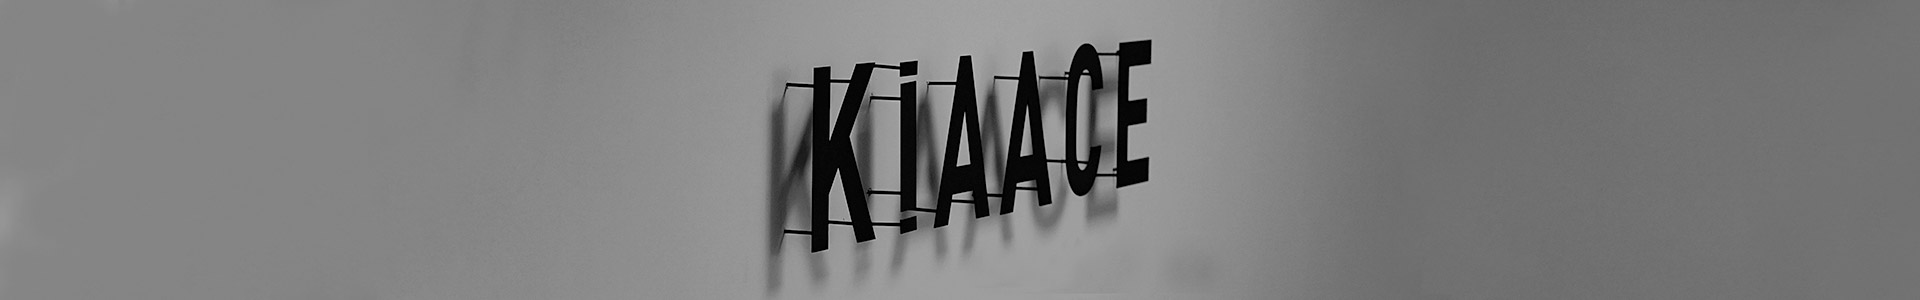 ContactUs-Kiaace